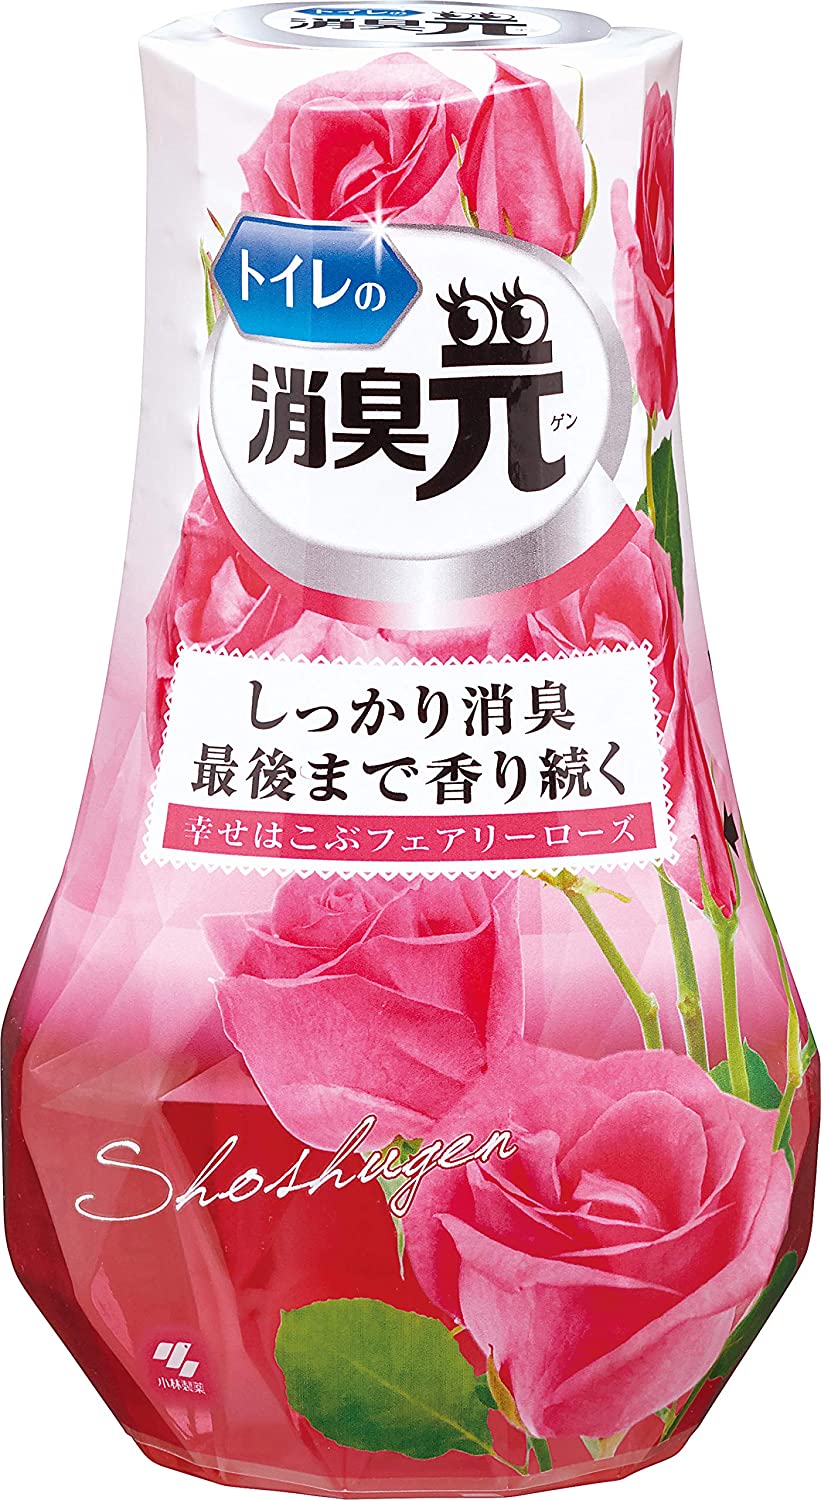 фото Shoshugen жидкий дезодорант для туалета, аромат розы, 400 мл kobayashi